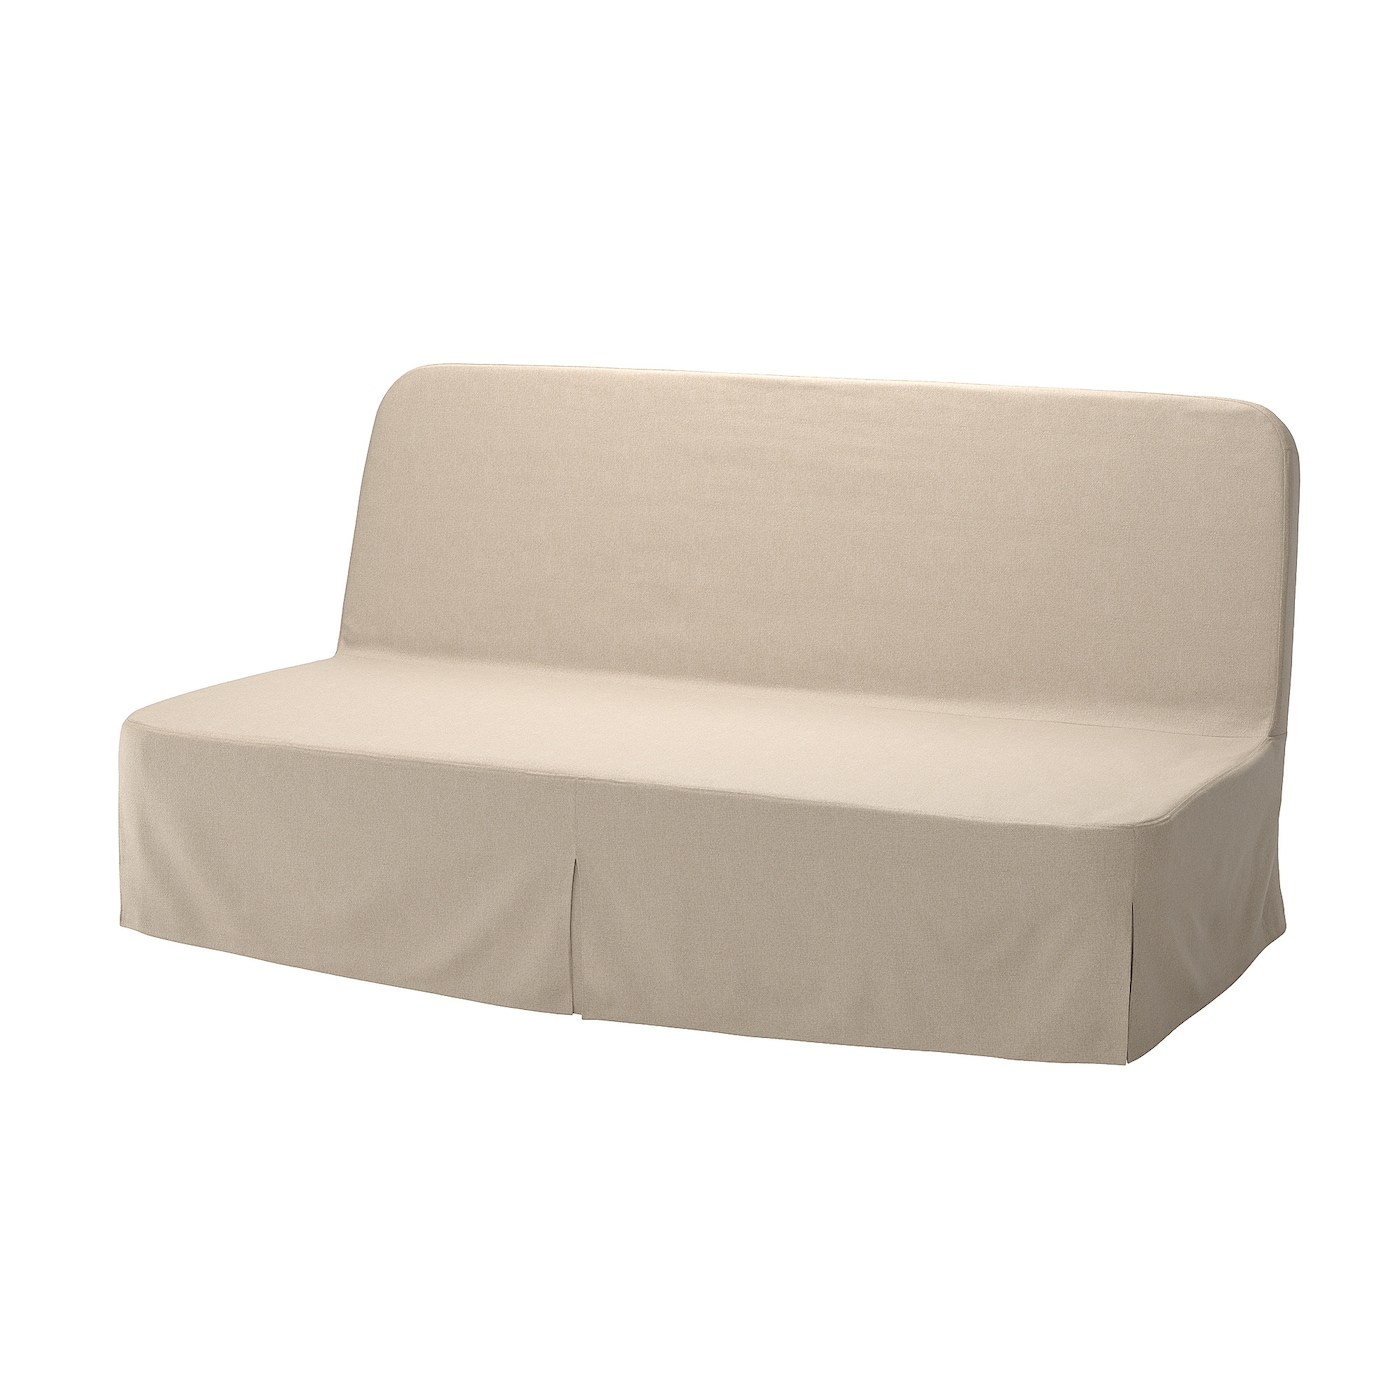 мультяшный матрас ленивый диван кровать подходит для детей татами маты креативный маленький диван кровать стул современная мебель для NYHAMN 3-местный диван-кровать, поролоновый матрас в комплекте/Нагген бежевый IKEA